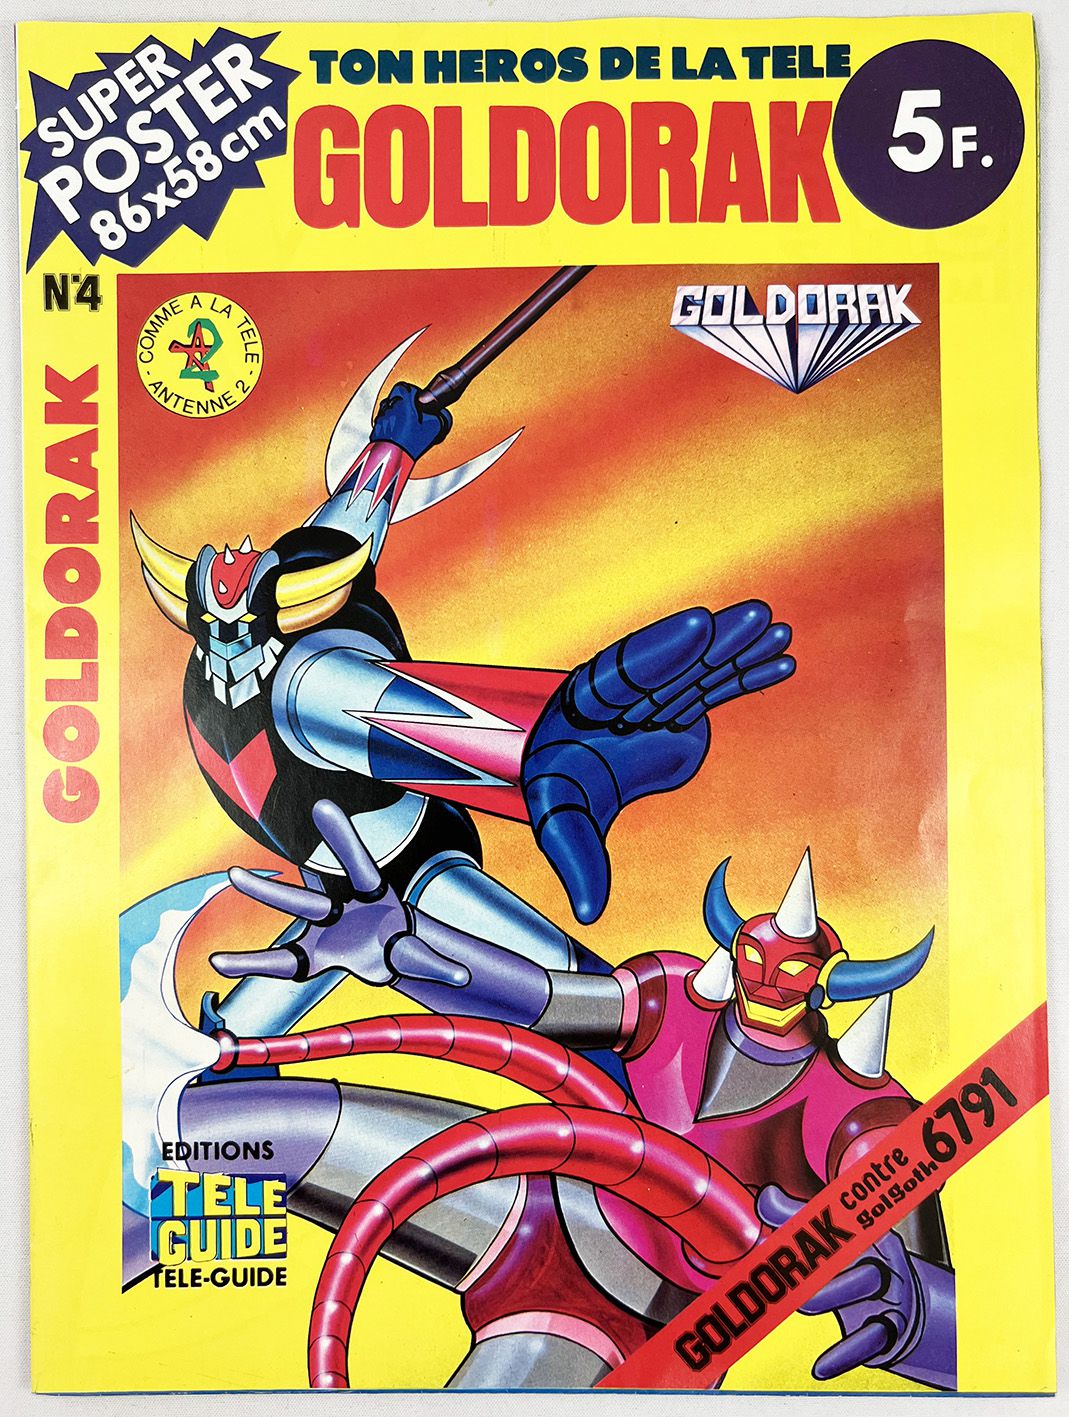 Goldorak - Editions Télé-Guide - Super Poster n°4 Goldorak contre